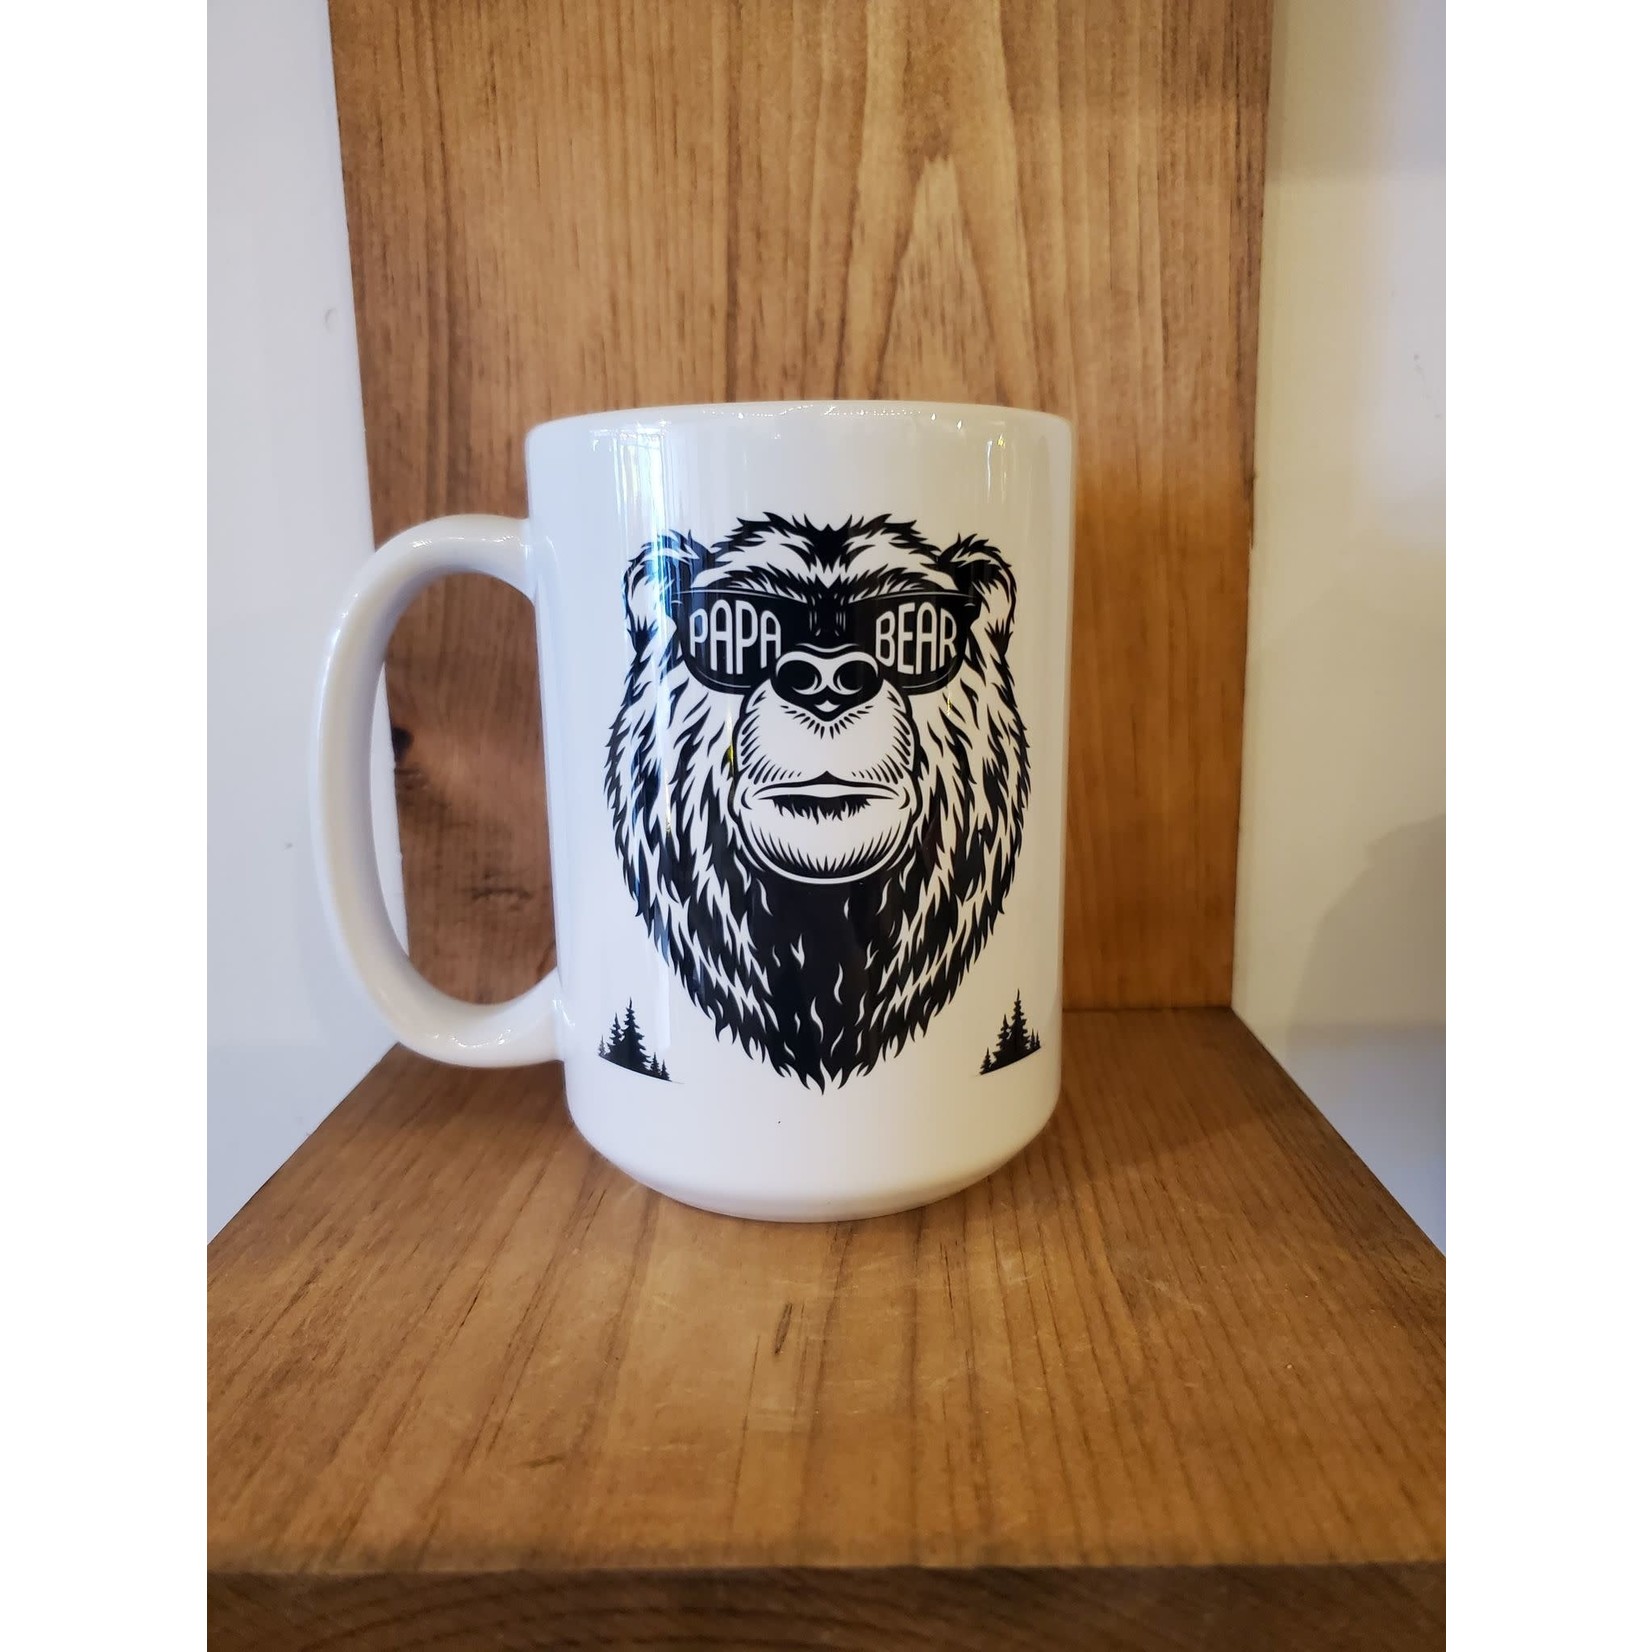 Papa bear mug